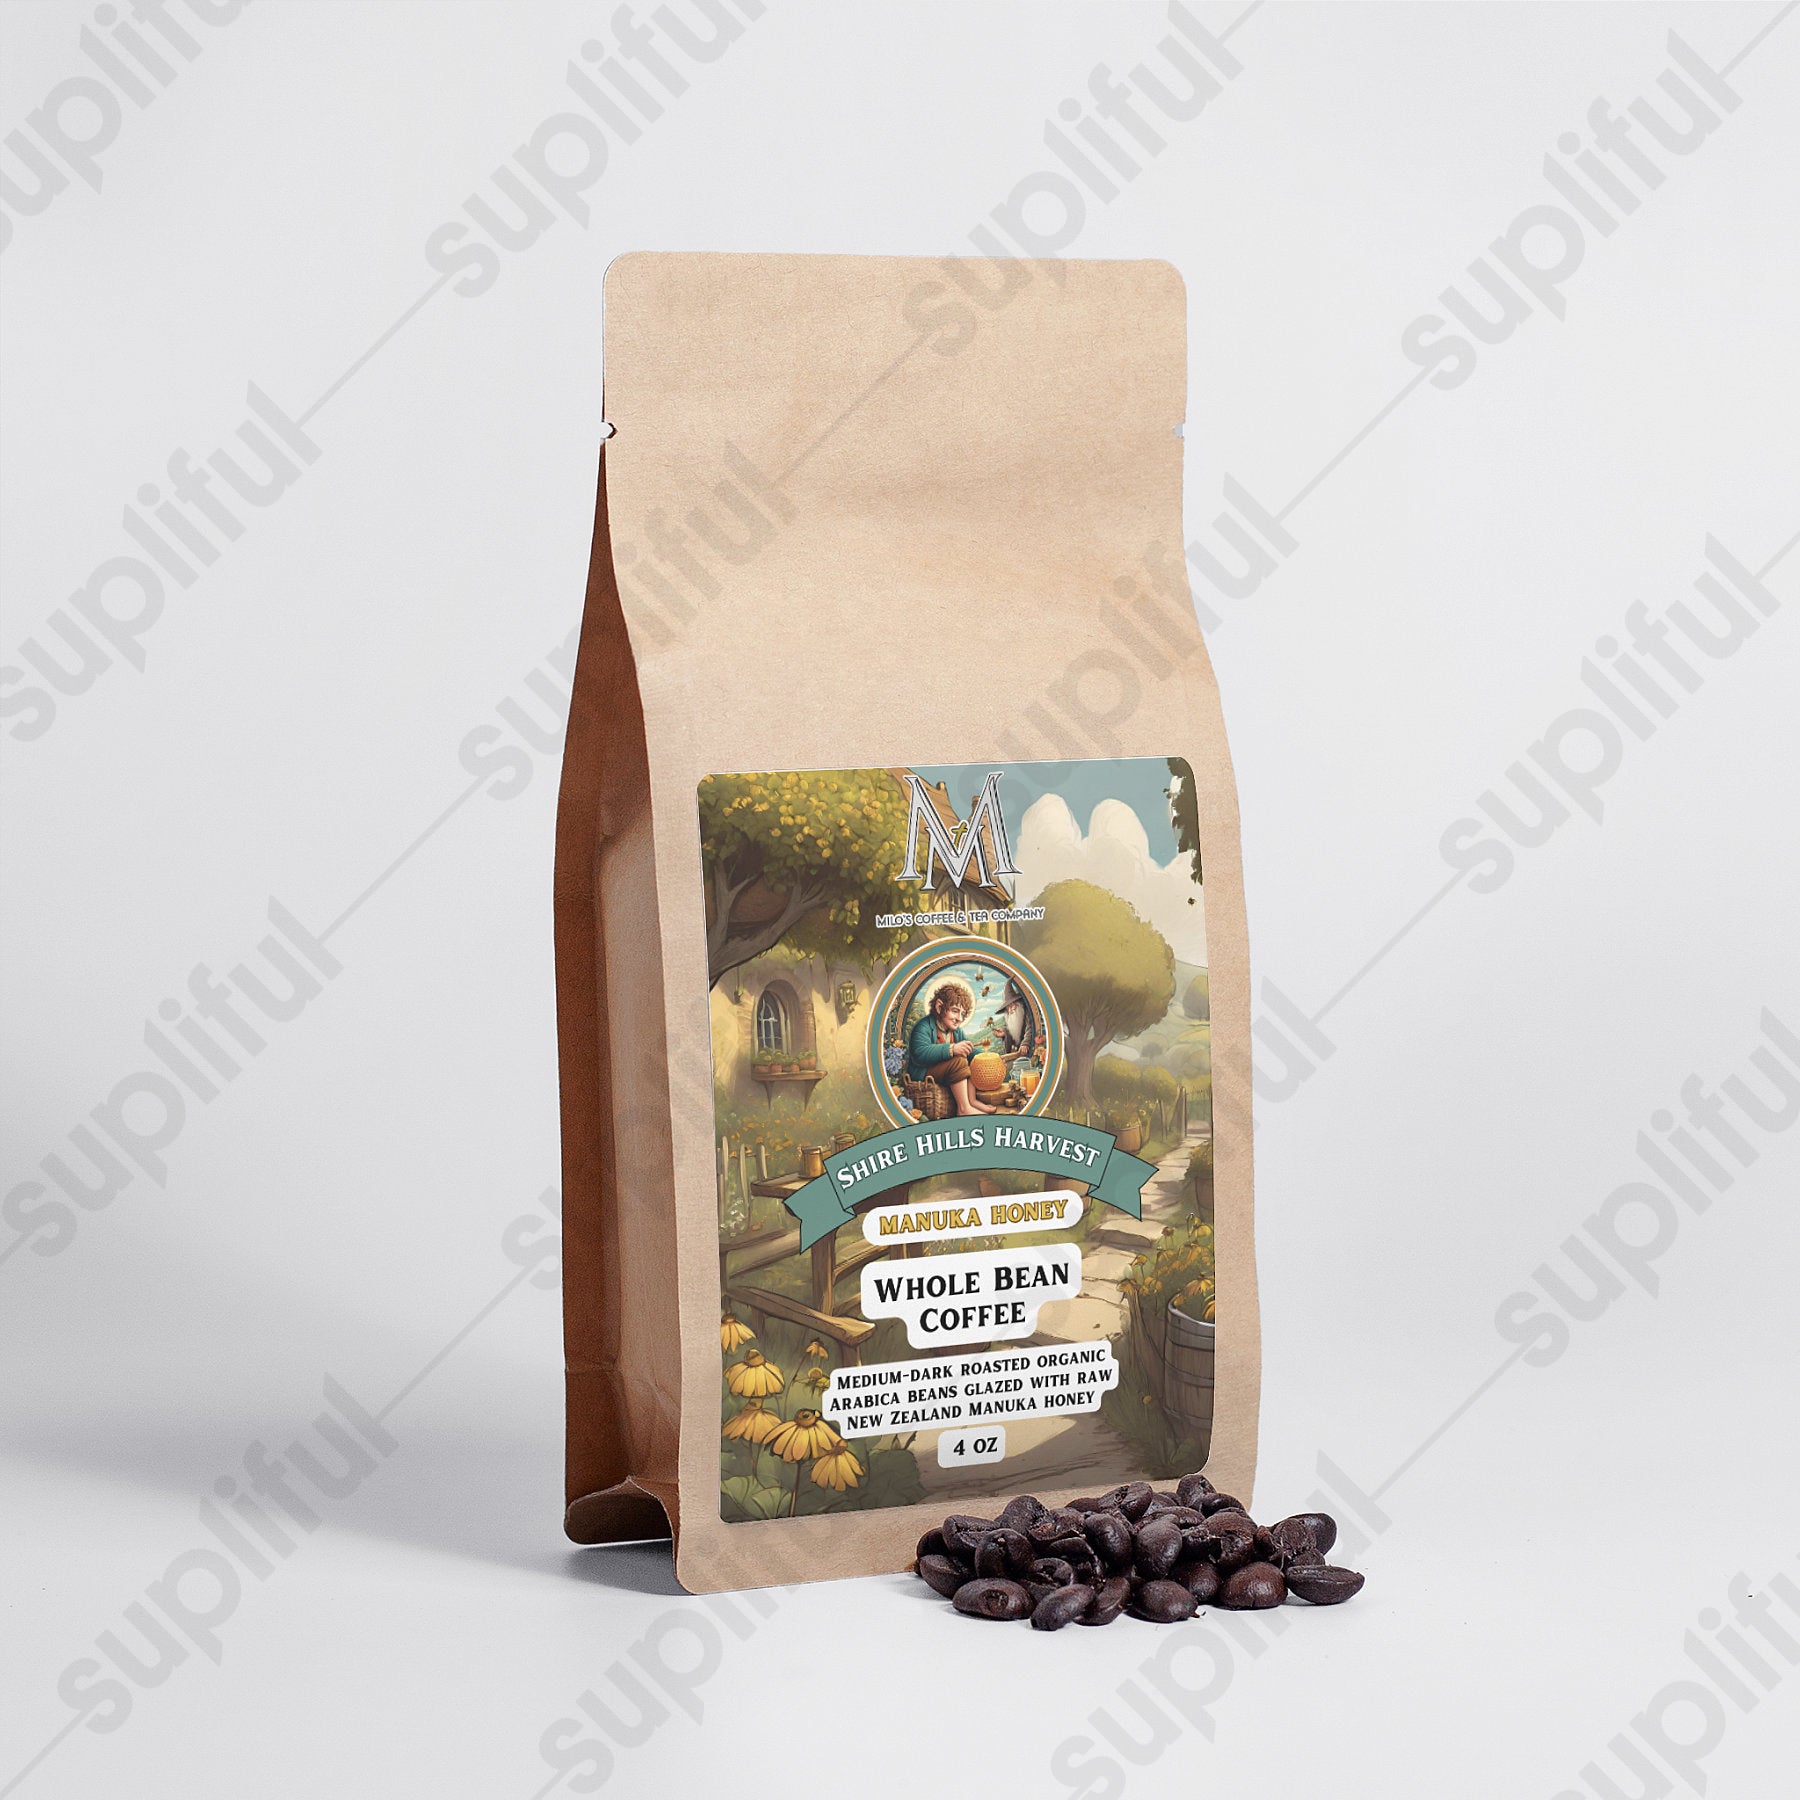 Shire Hills Harvest Manuka Honey Coffee 4oz - Milo's Coffee and Tea Company